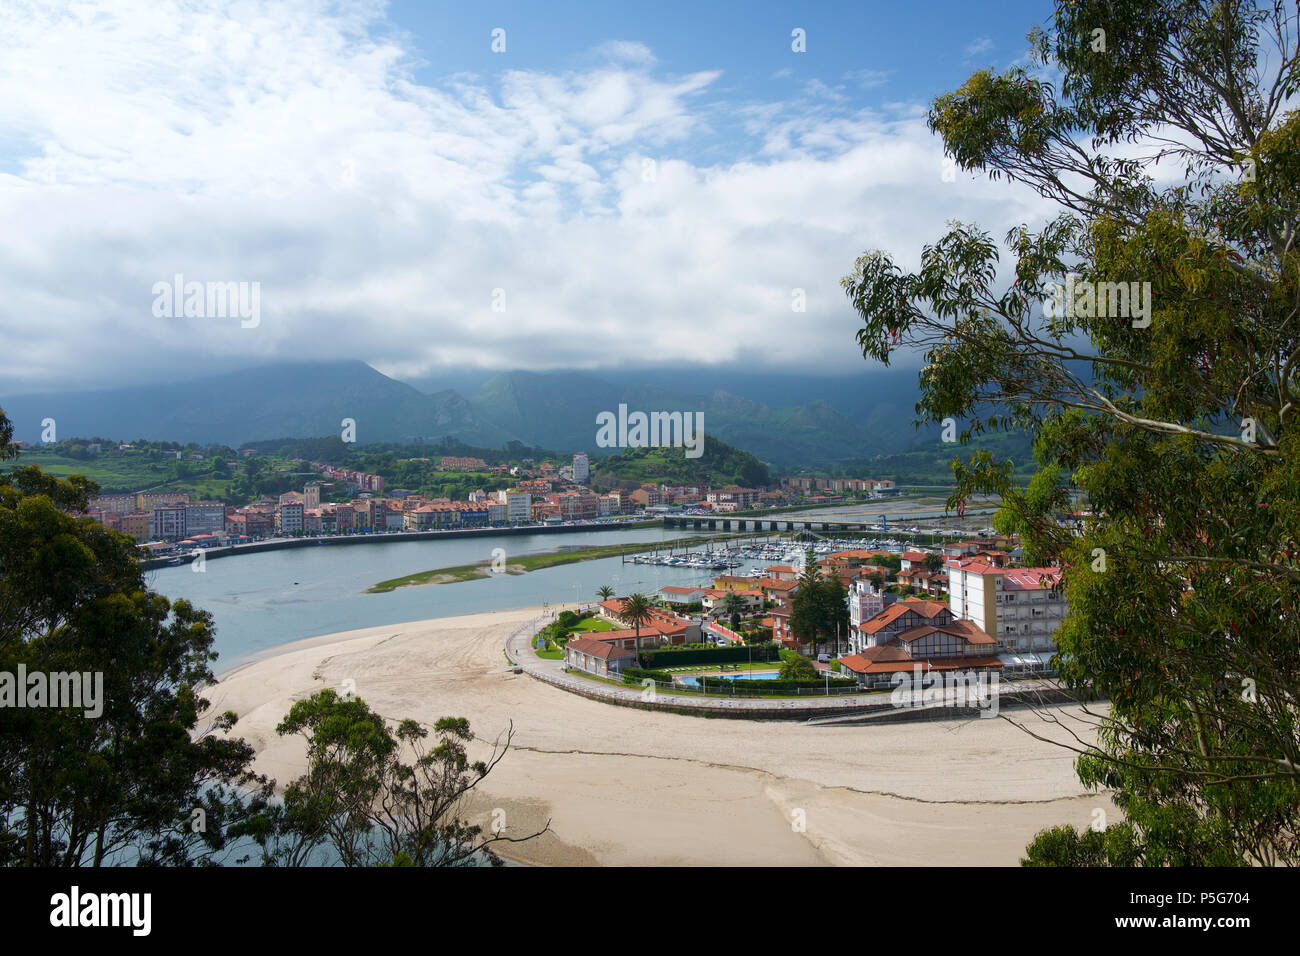 Harbour at Ribadesella, Asturias, Spain Stock Photo - Alamy